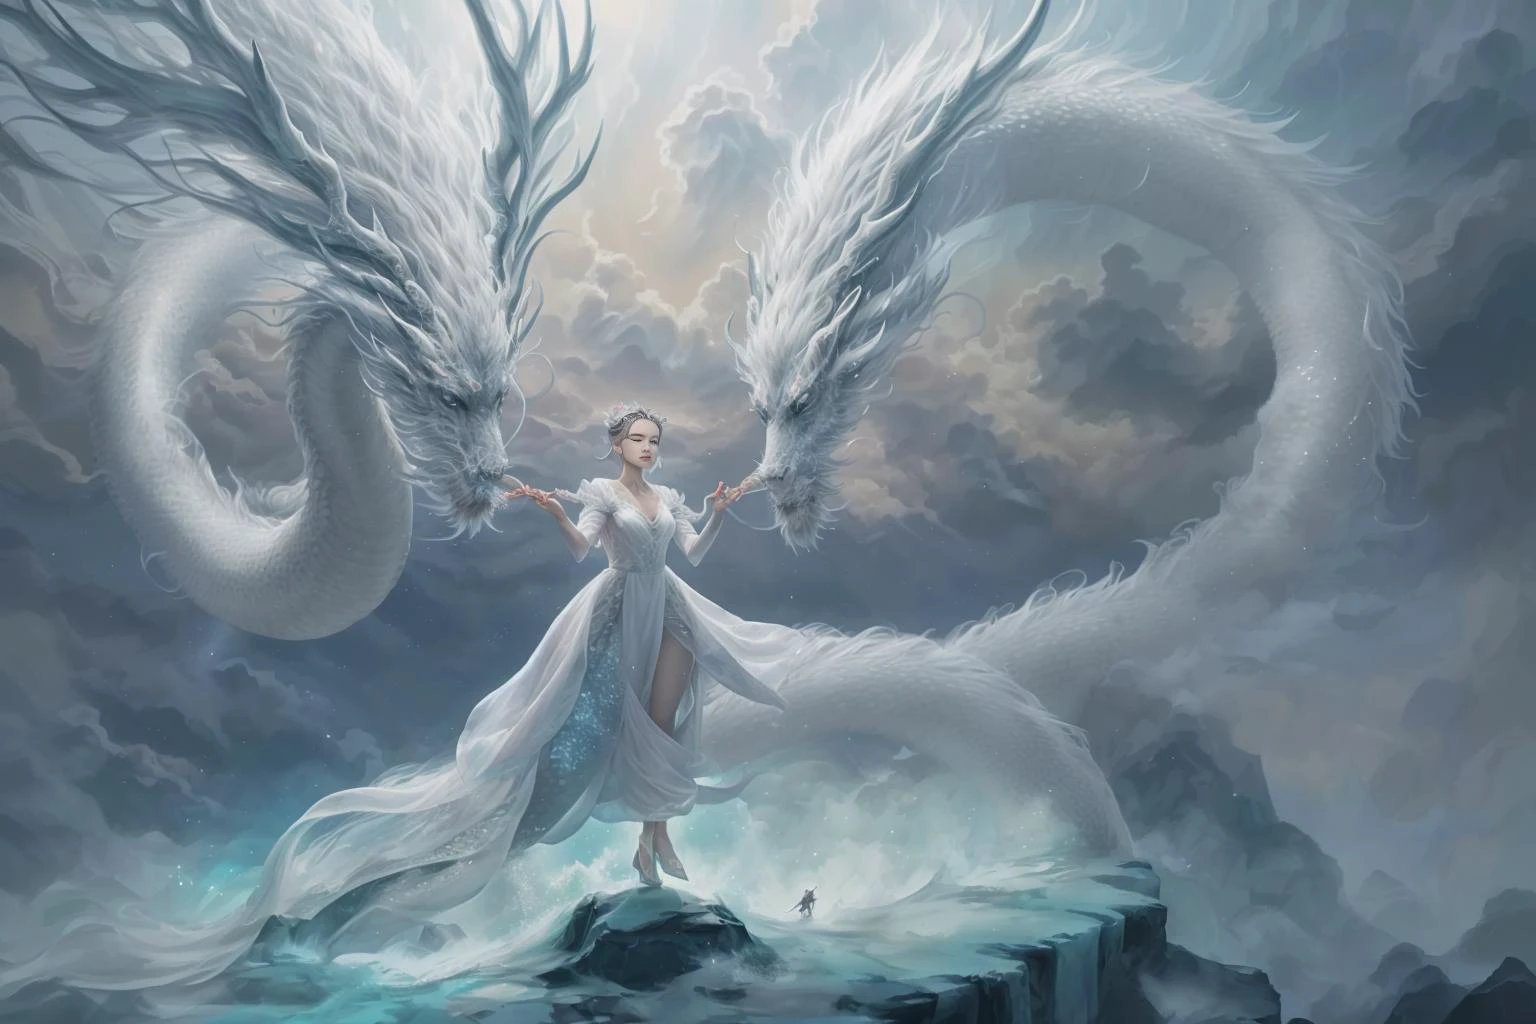 在迷人的畫面中, 一位身穿白色中國長袍的優雅女子騎著中國神話中的龍在天空中滑翔. 當他們穿越天空時, 她飄逸的長袍和龍的虹彩鱗片營造出和諧與超凡脫俗之美的迷人景象. 
高動態範圍, (照片寫實主義, 杰作品质, 最好的品質), , 純粹的Erosface_v1,ulzzang-6500-v1.1,